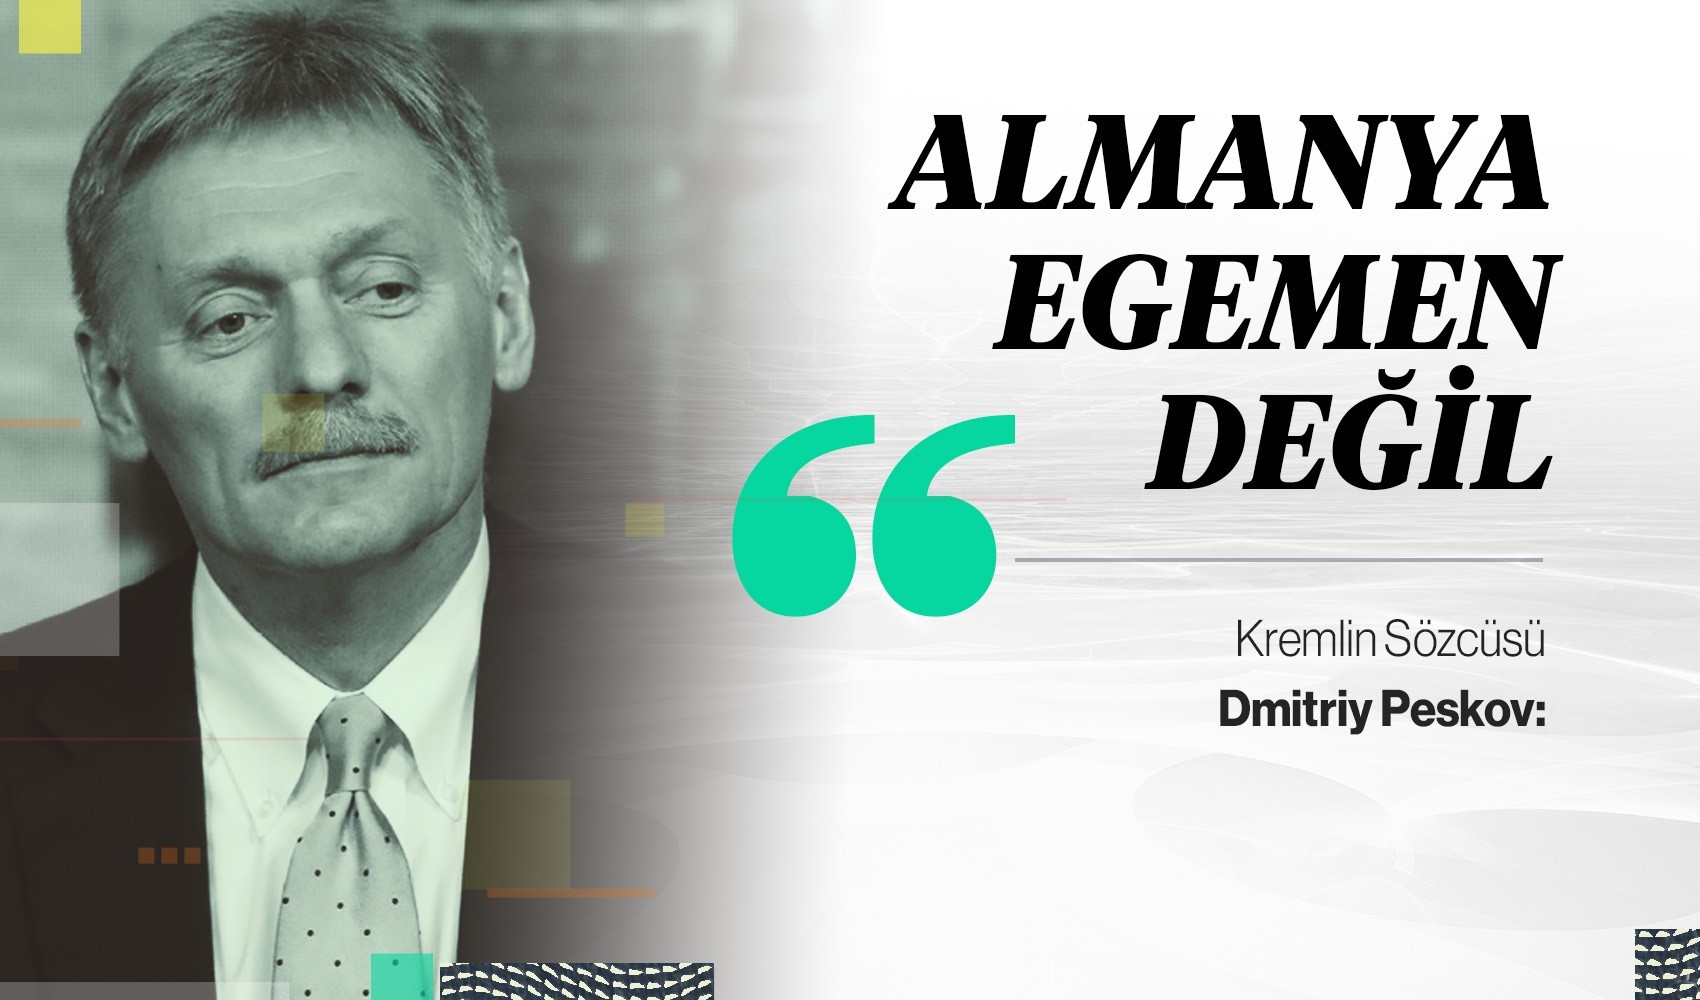 Kremlin Sözcüsü: Almanya egemenlikten yoksun